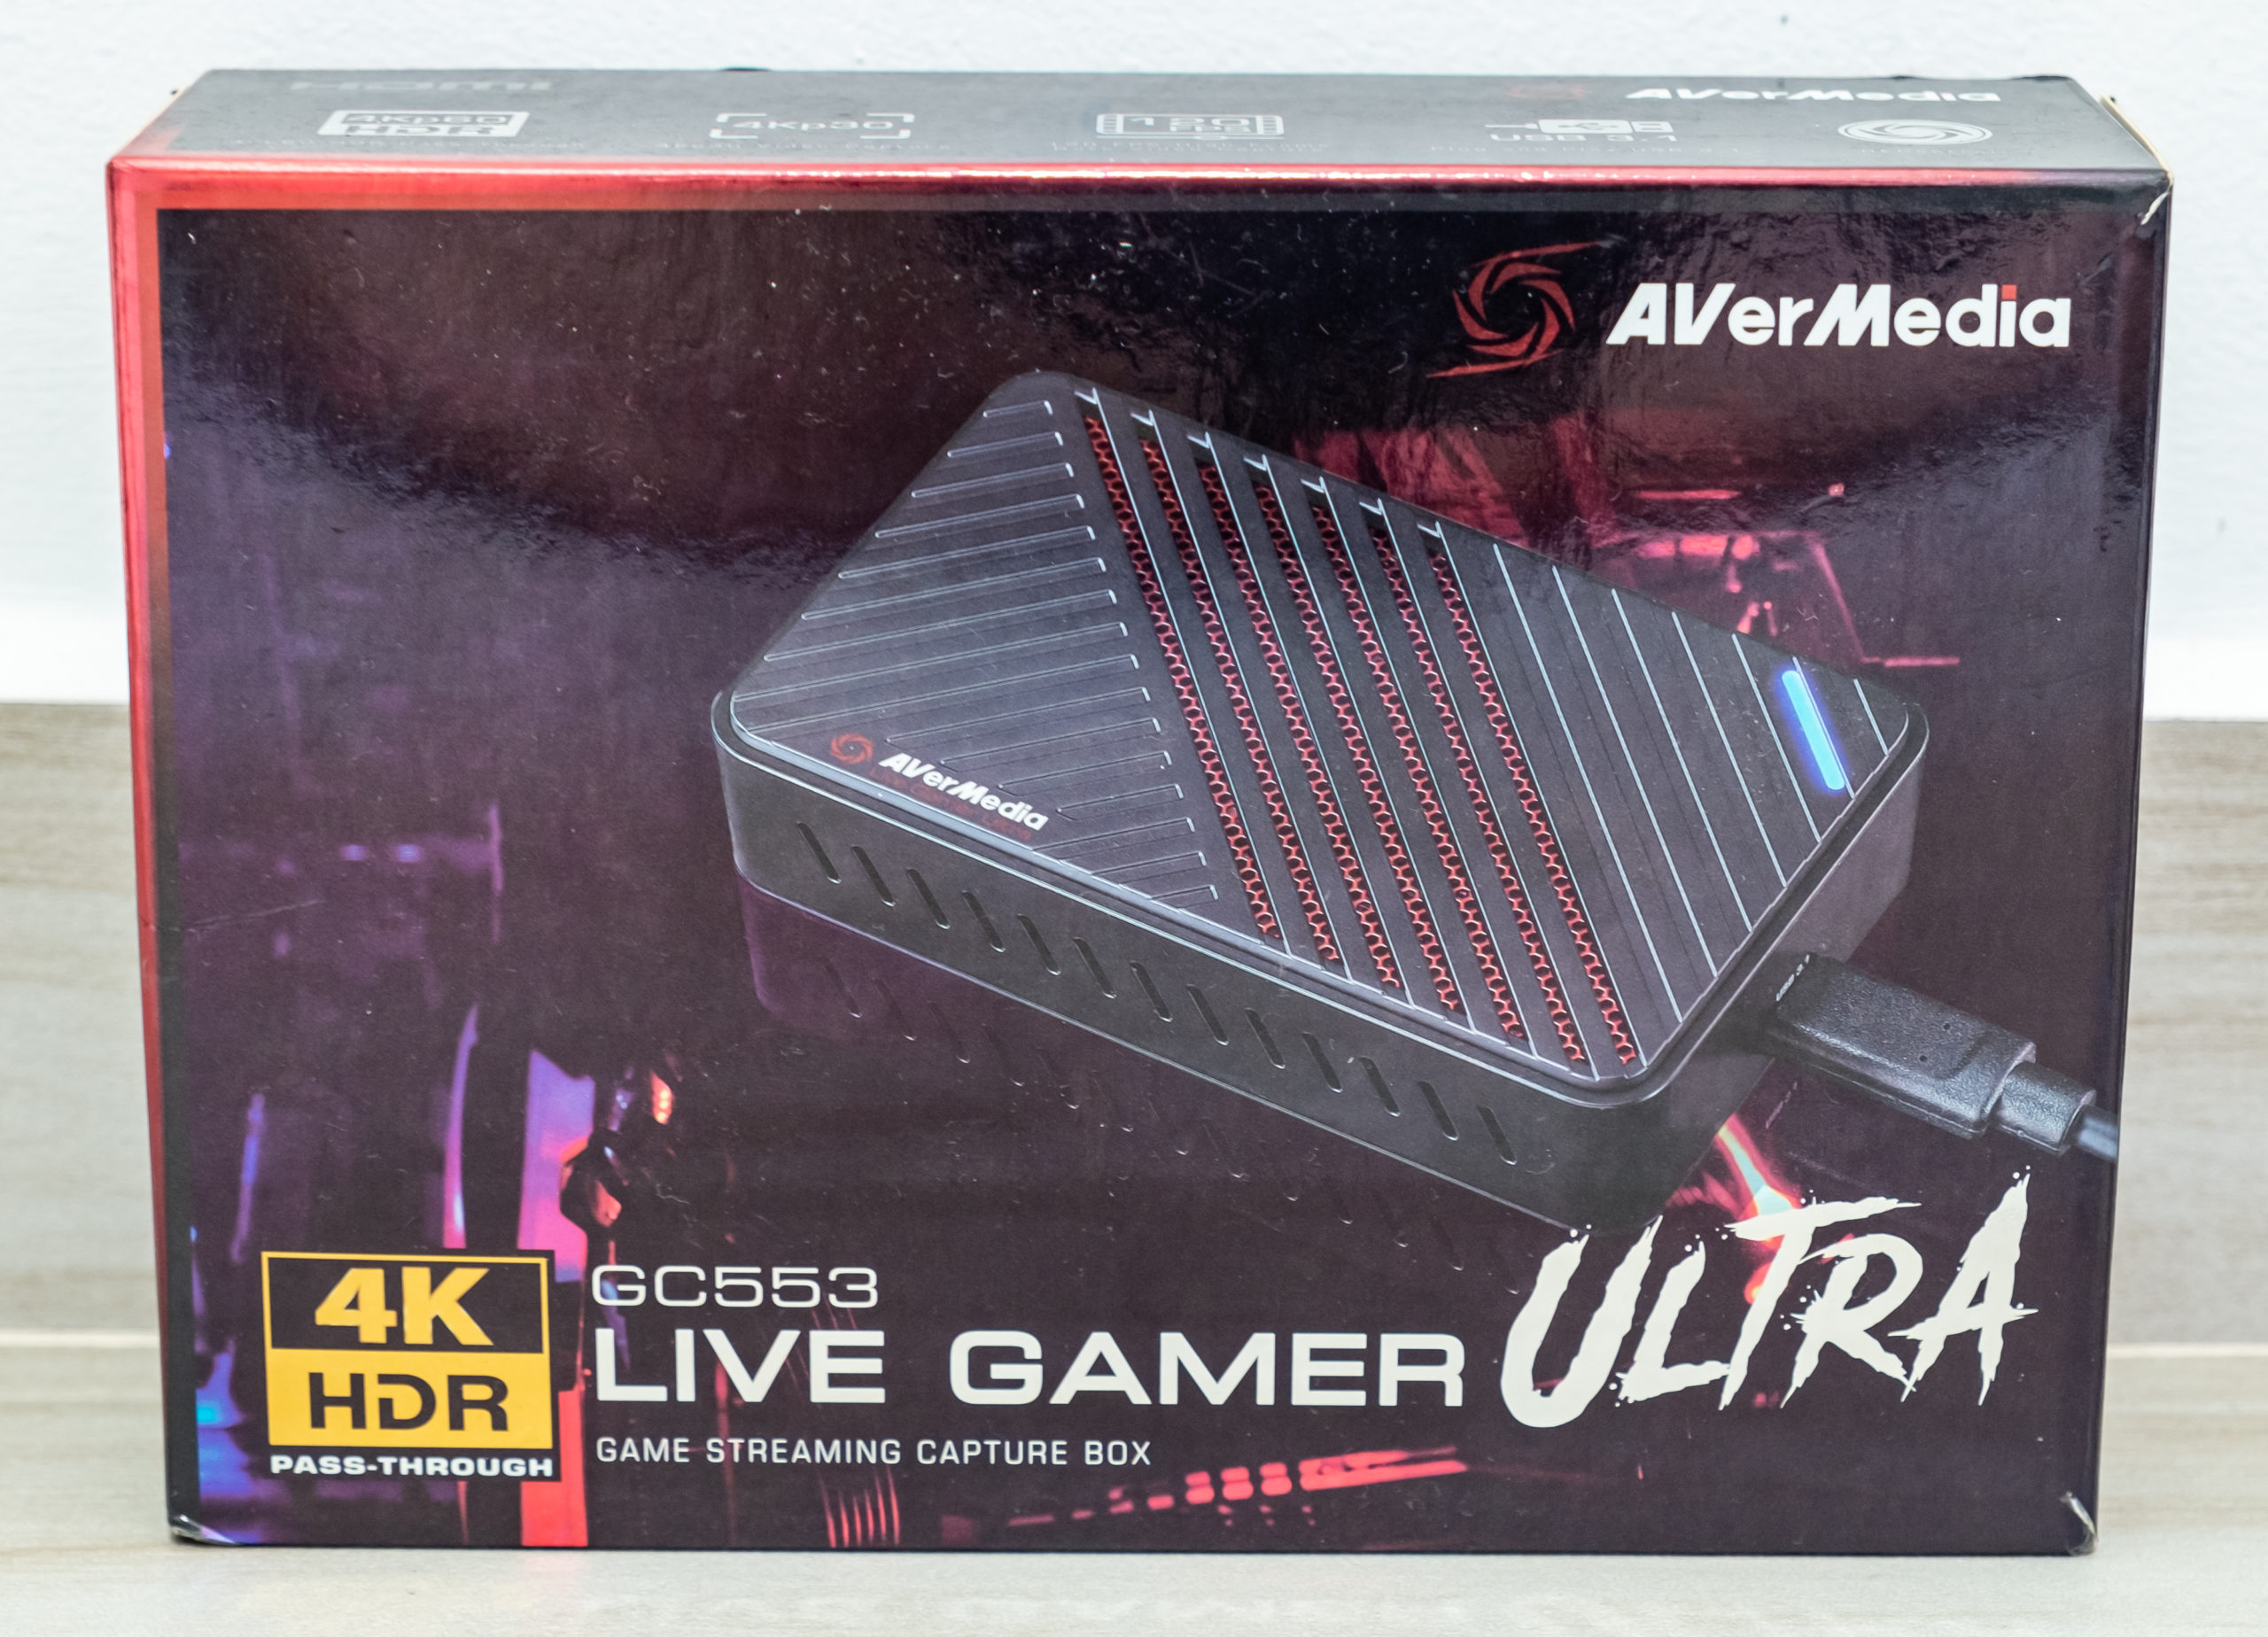 AVerMedia Live Gamer ULTRA GC553 - Review - Einfoldtech